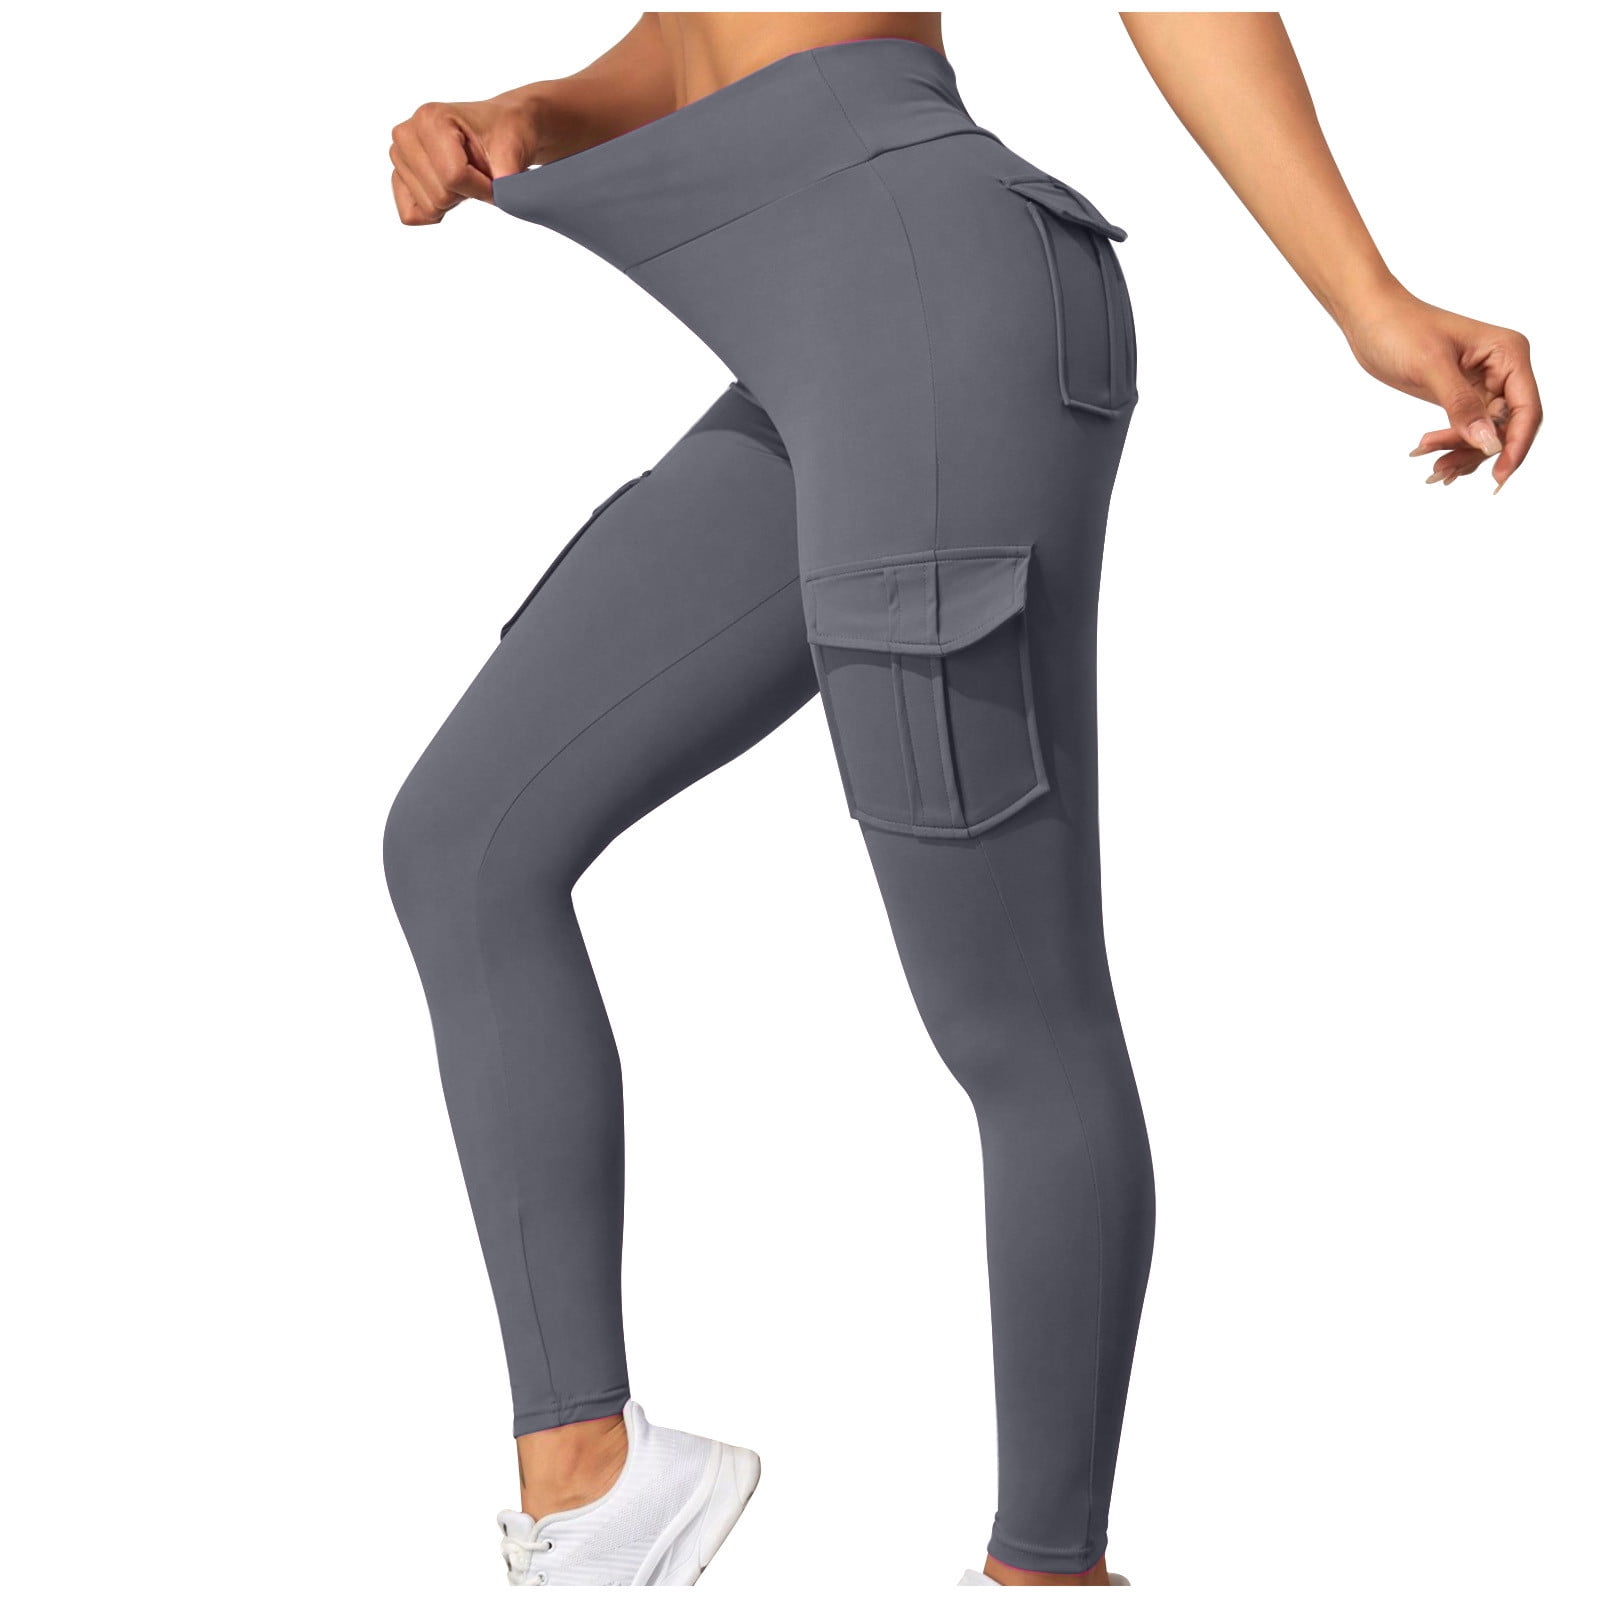 XFLWAM Butt Leggings with Pockets for Women High Waist Cargo